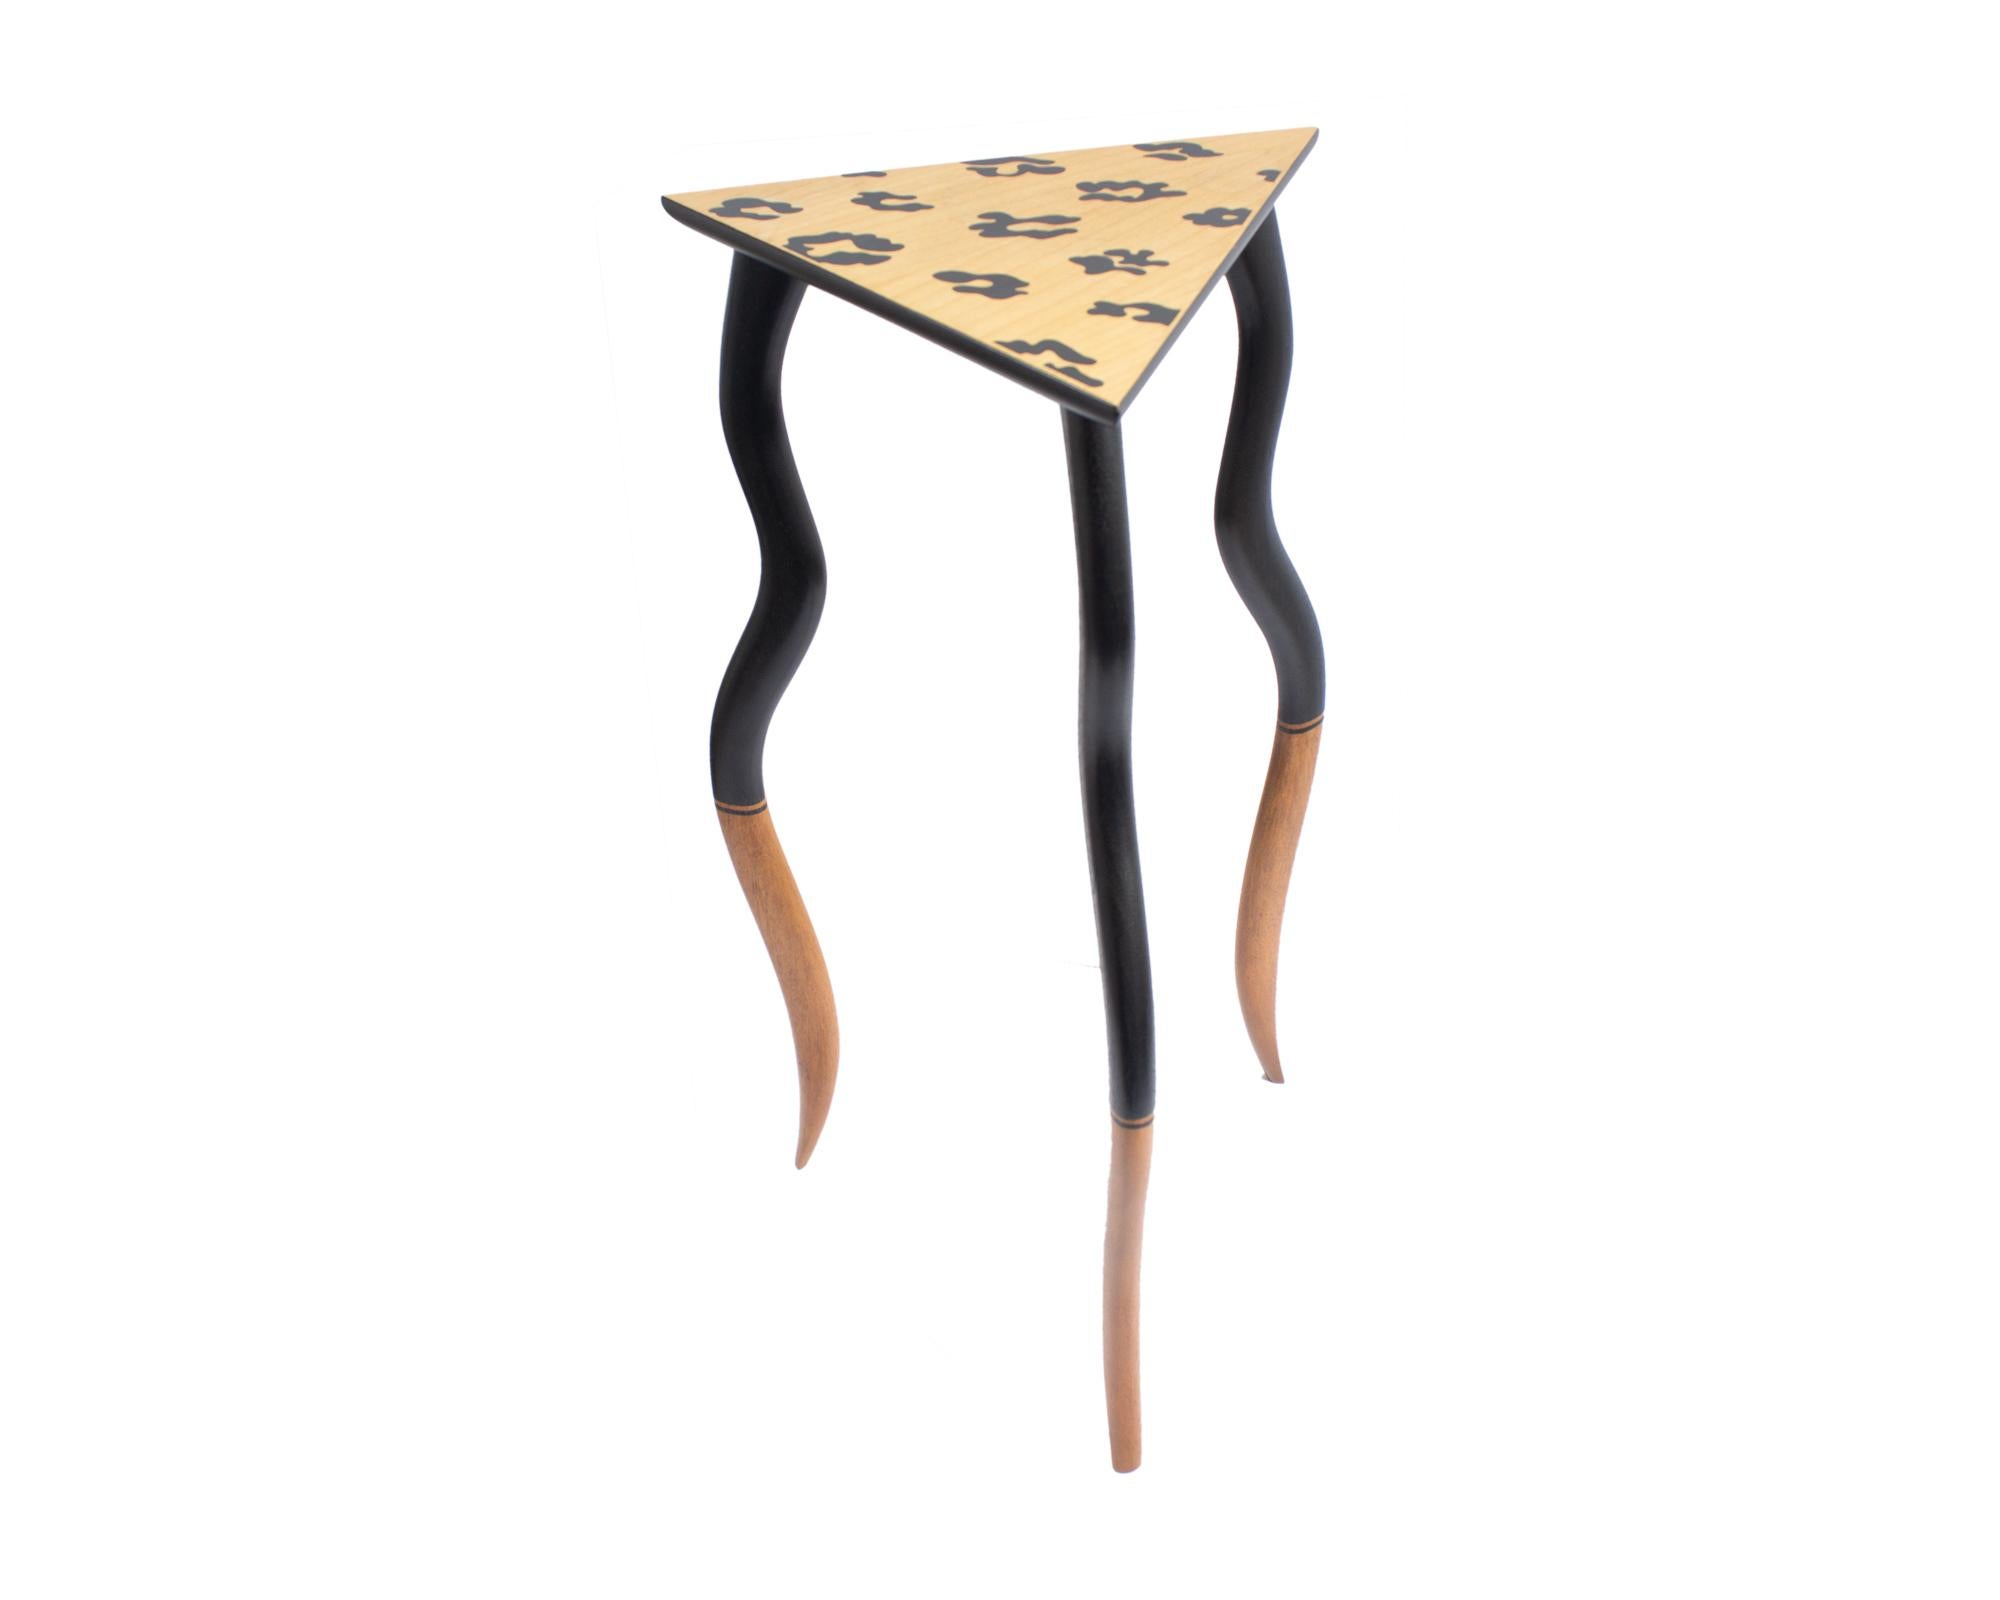 Table en bois postmoderne des années 1980 ou du début des années 1990, conçue par l'artiste et designer américain Bob Trotman (né en 1947). Intitulée Dancing Table, cette table d'appoint en bois présente un plateau triangulaire et trois pieds